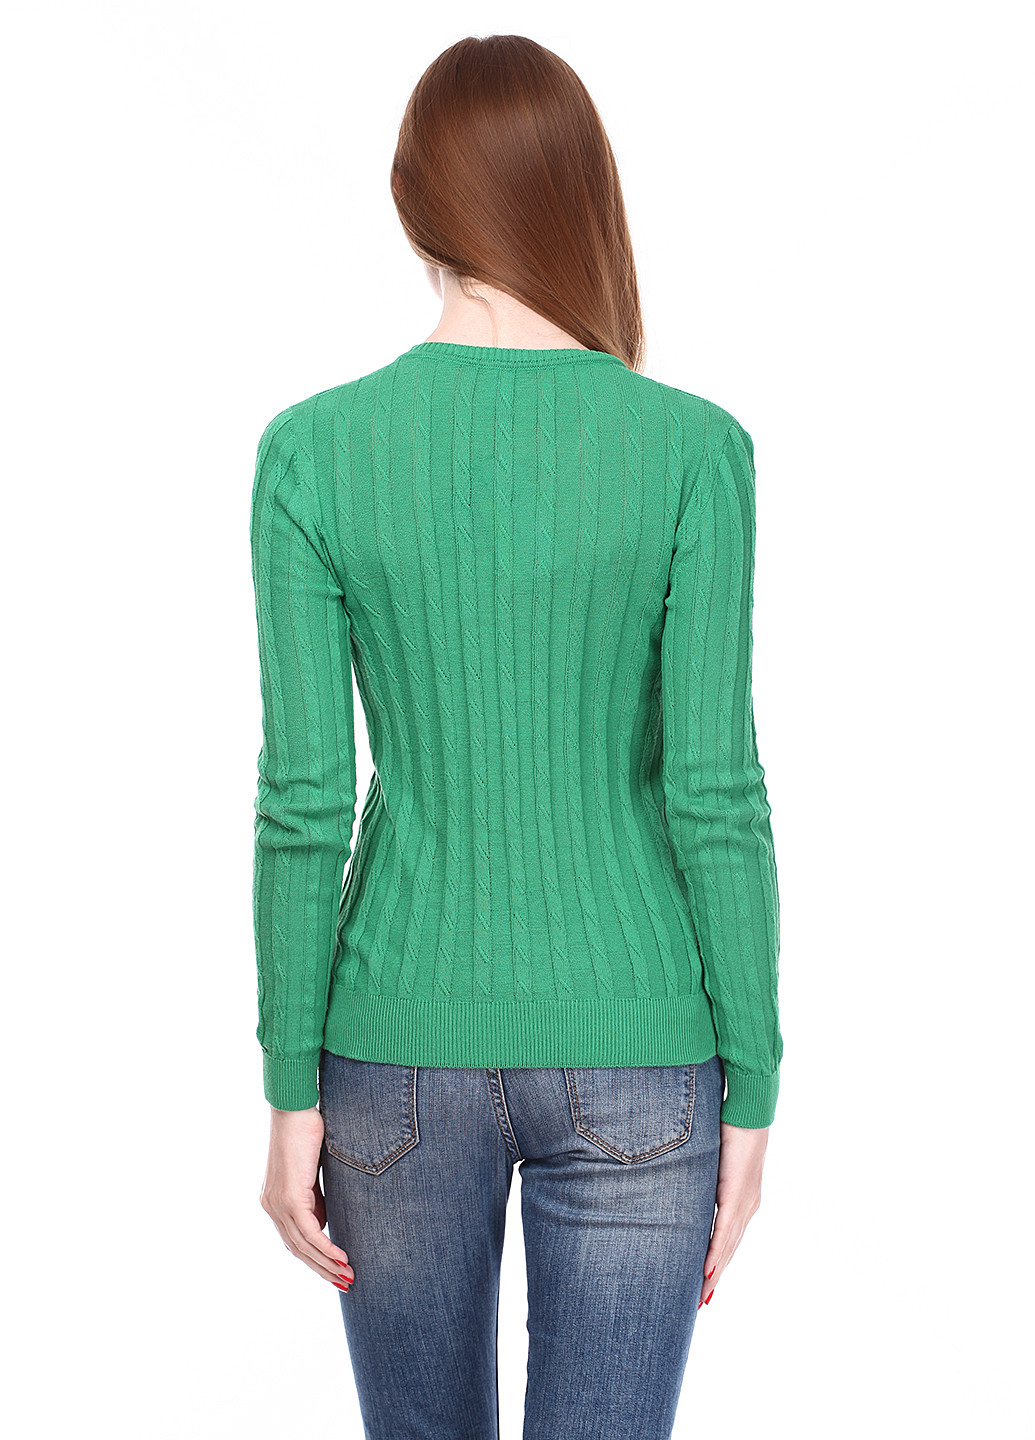 Зеленый демисезонный пуловер пуловер Folgore Milano